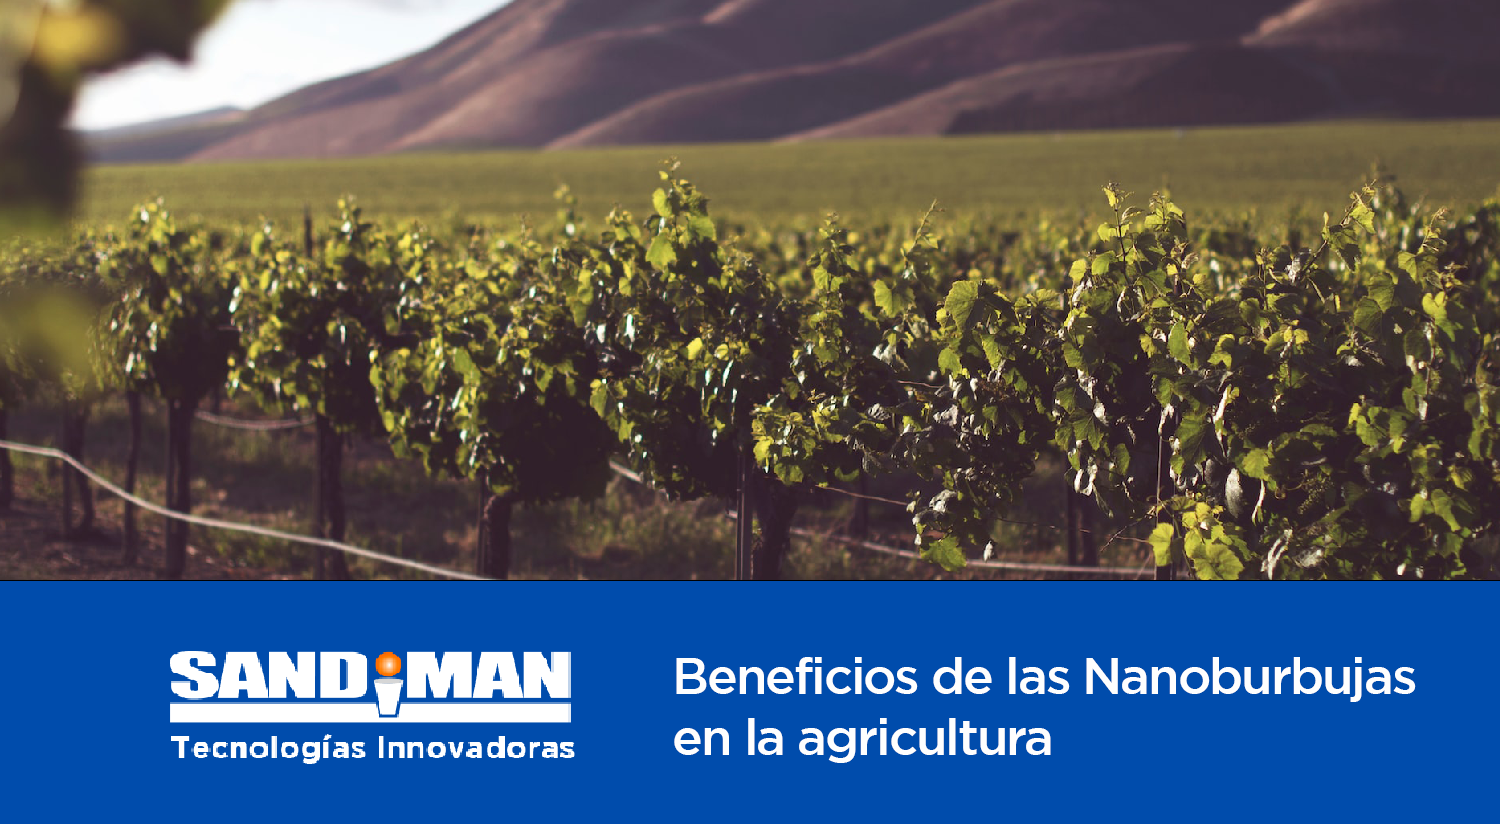 Beneficios de las Nanoburbujas en la Agricultura